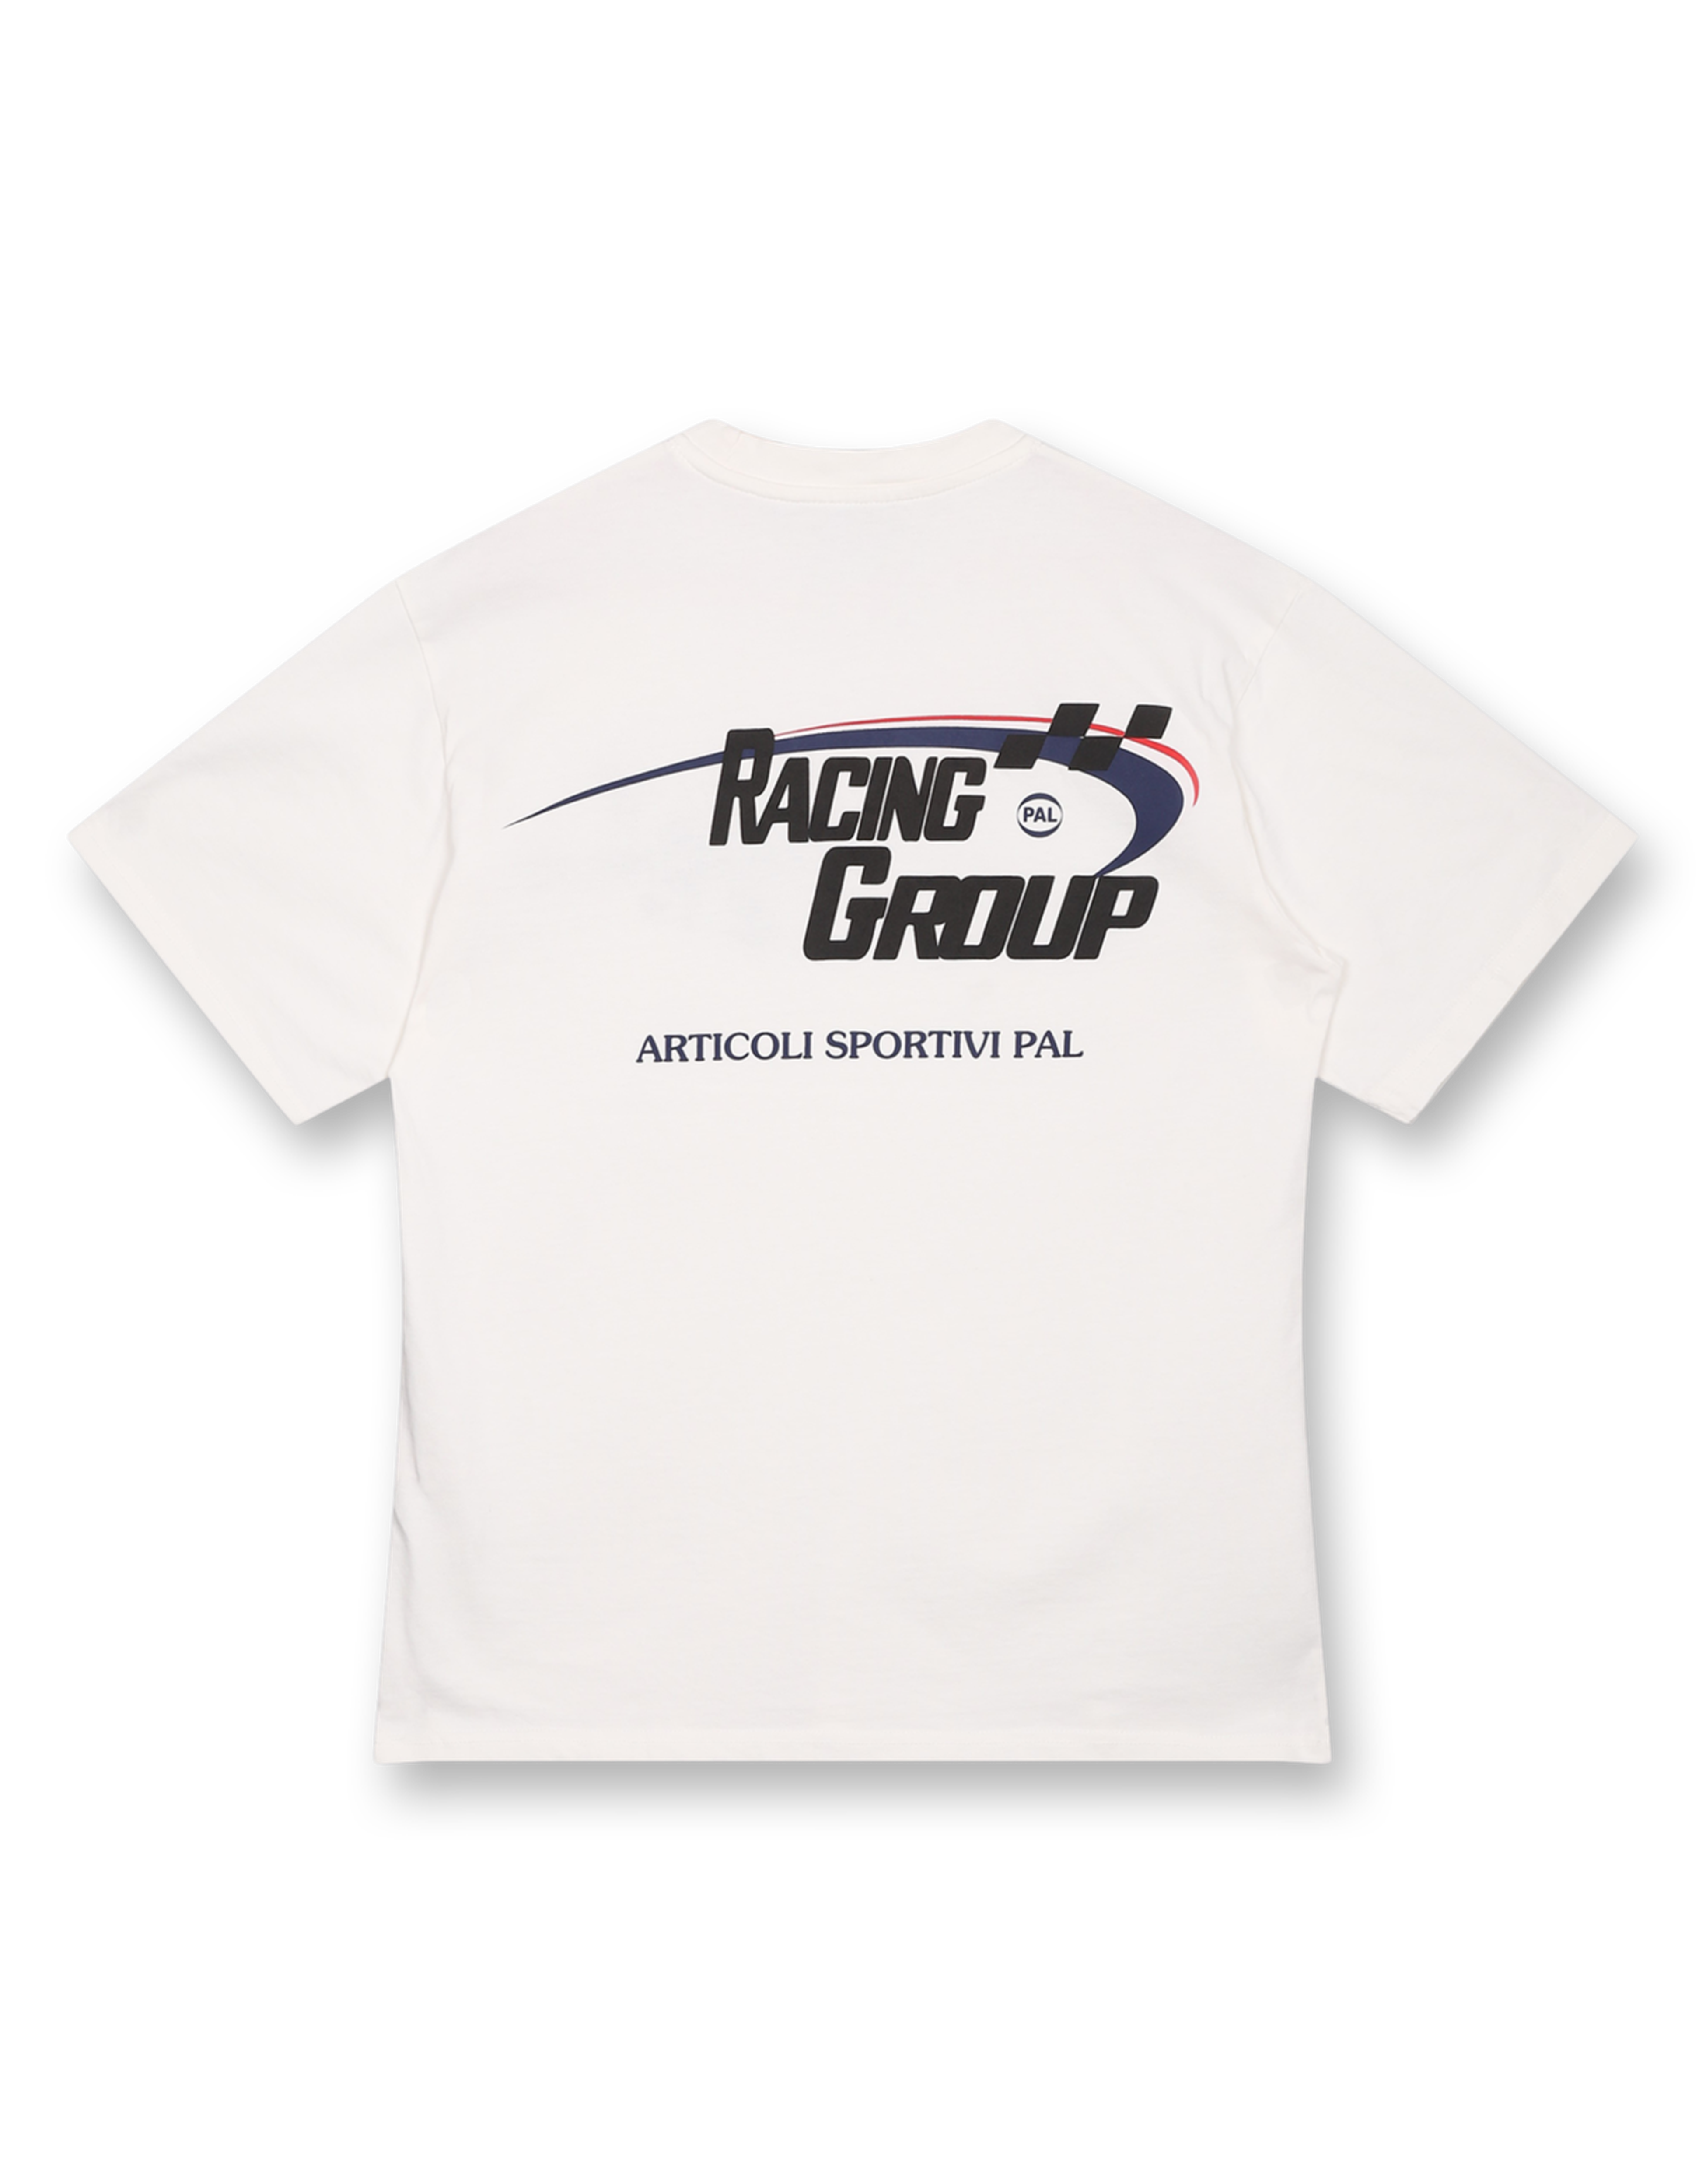 Racing Group T-shirt